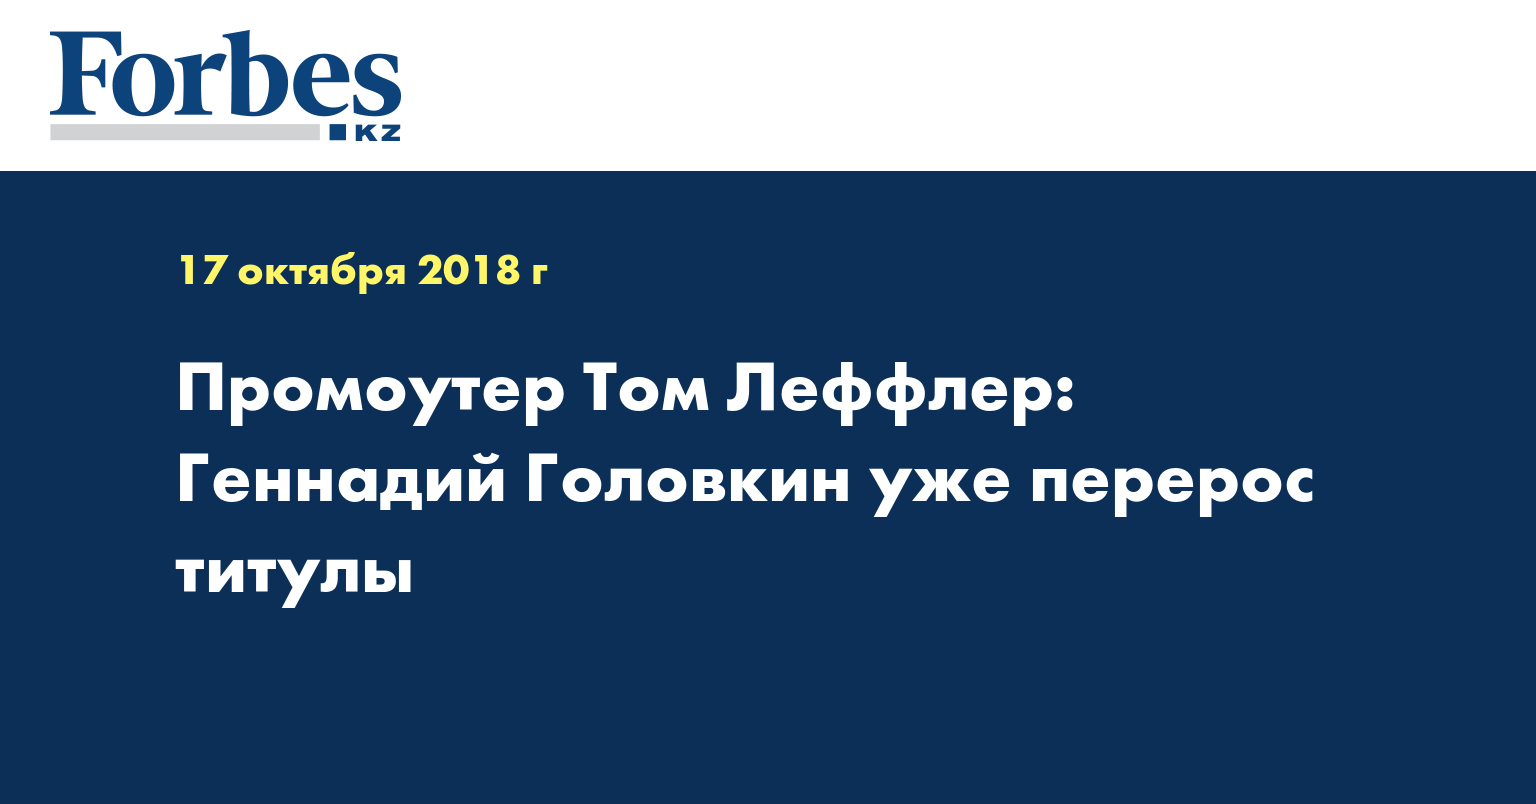 Промоутер Том Леффлер: Геннадий Головкин уже перерос титулы